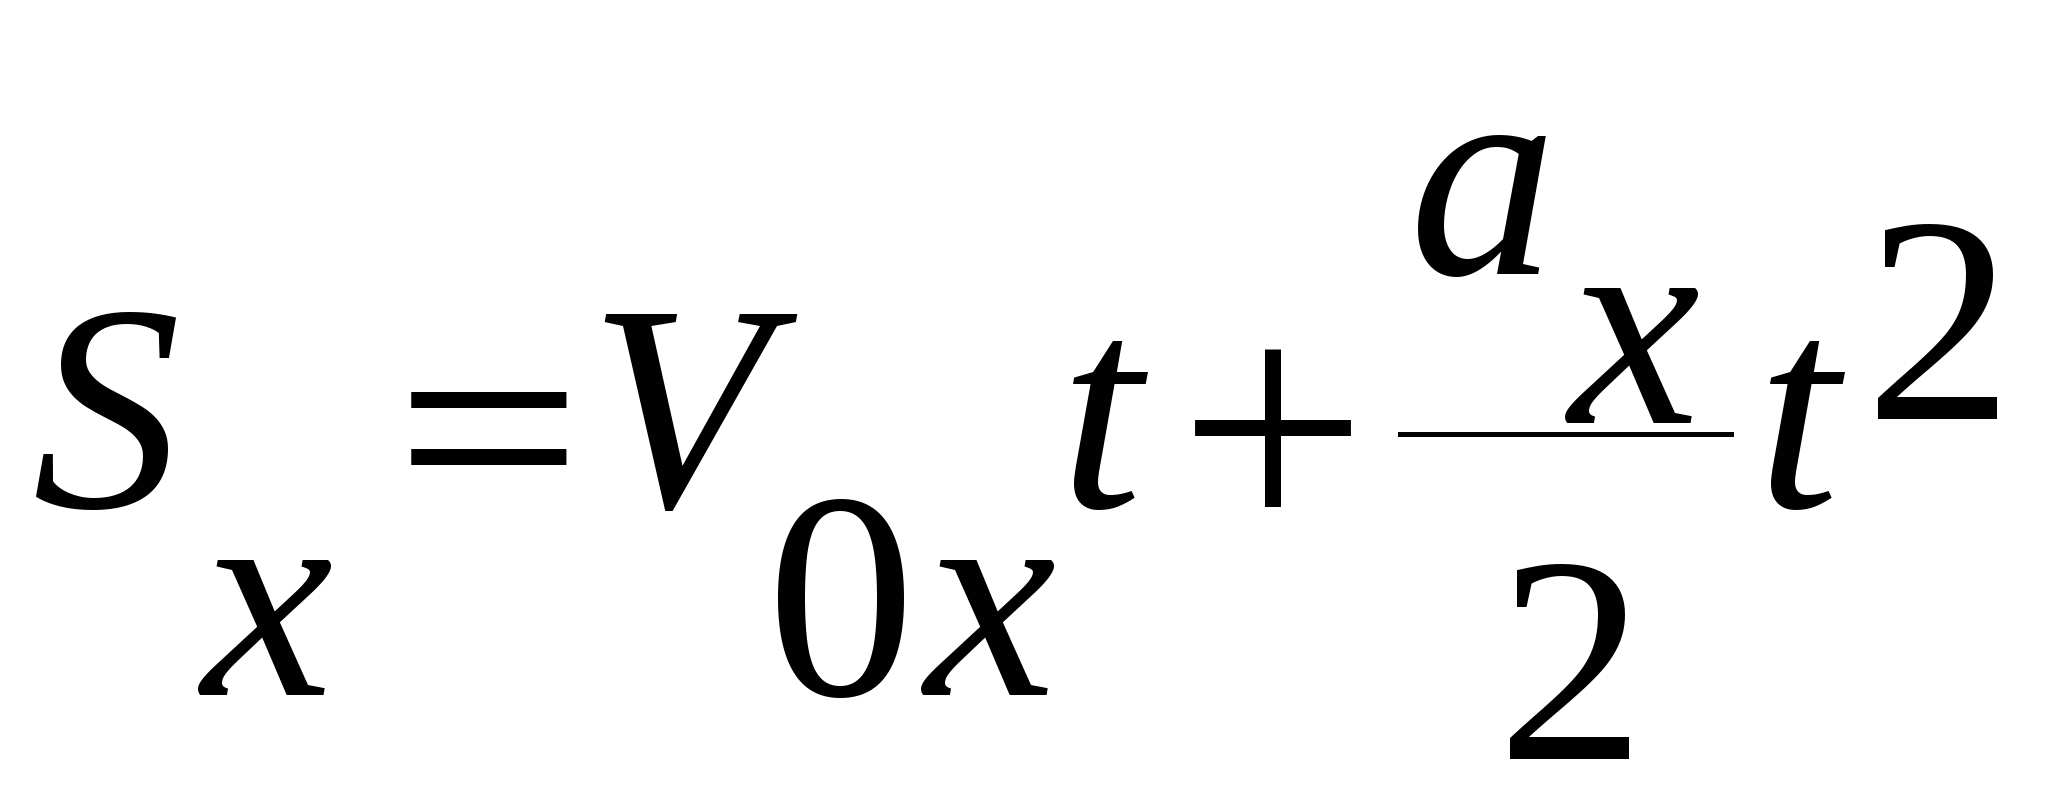 Х х 0 s x. Формула SX v0xt+axt2/2. VX уравнение. Формула AX VX-v0x/t. VX v0x+Axt формула.